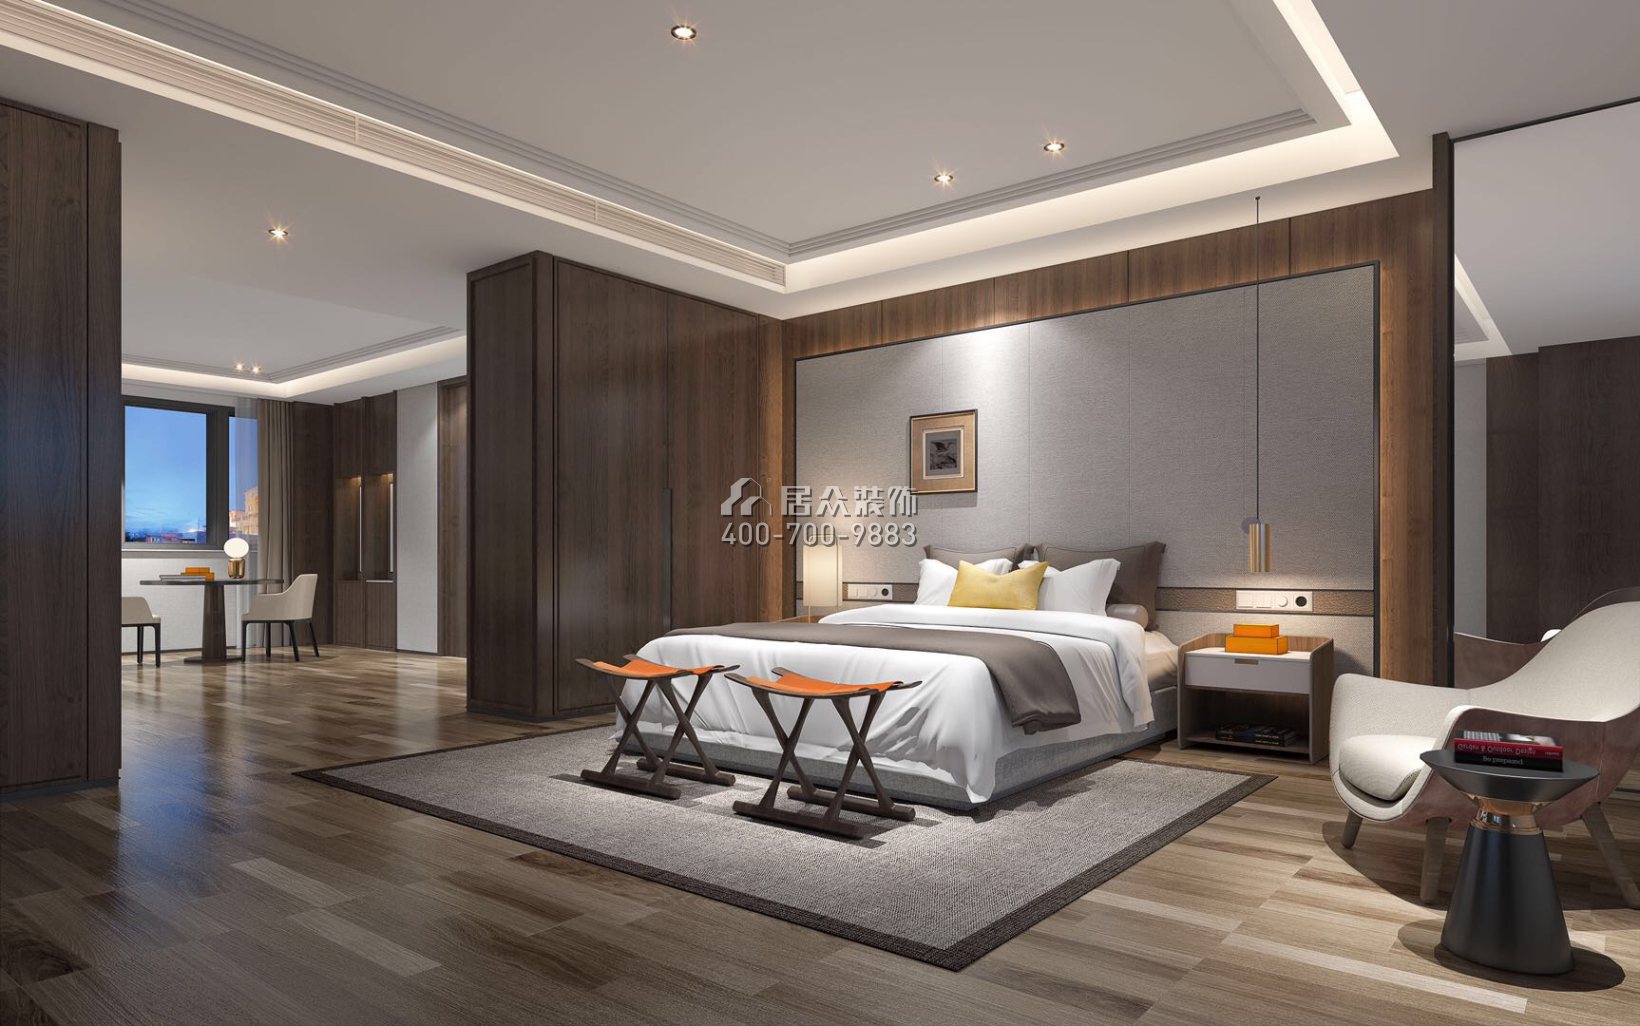 華潤城華潤置地大廈二期200平方米其他風格平層戶型臥室裝修效果圖